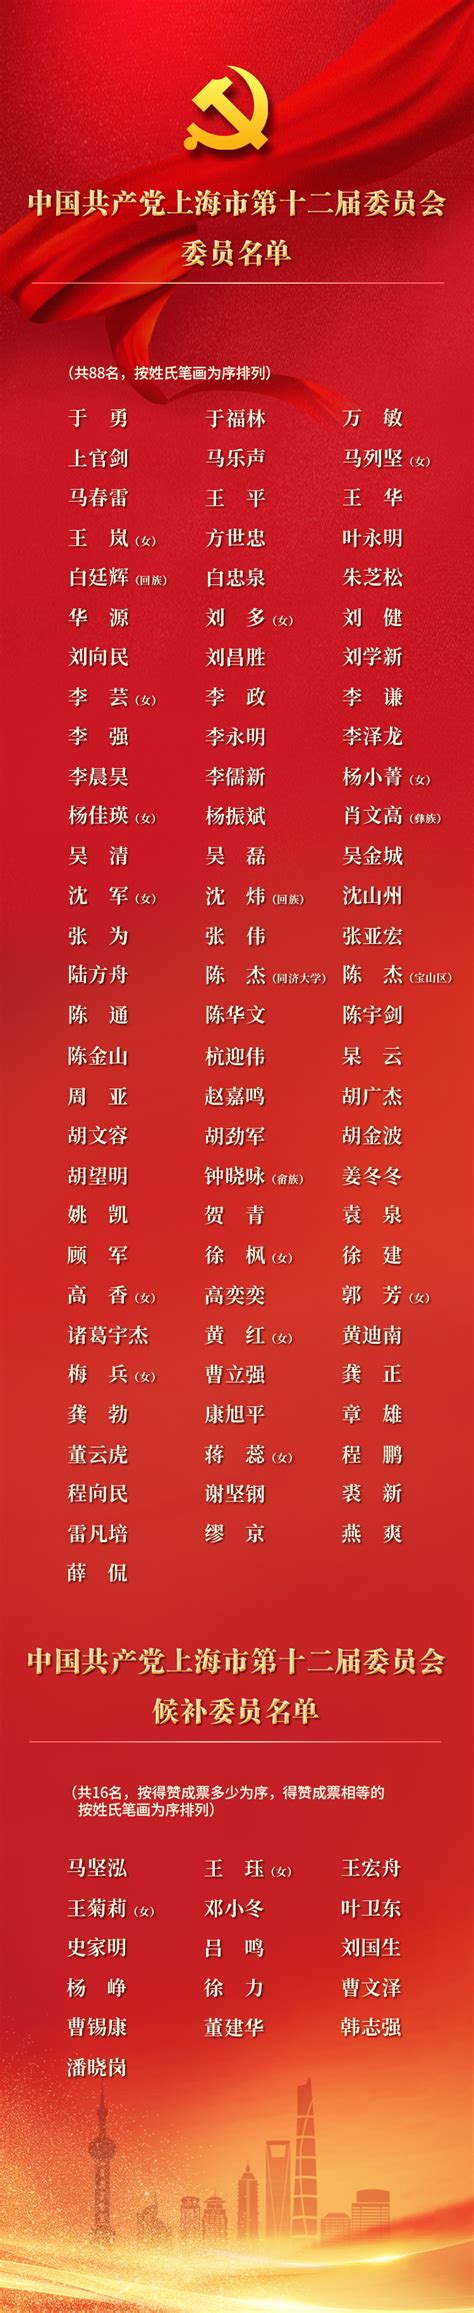 湖南省发展和改革委员会2017考试拟录用公务员名单公示_步知网